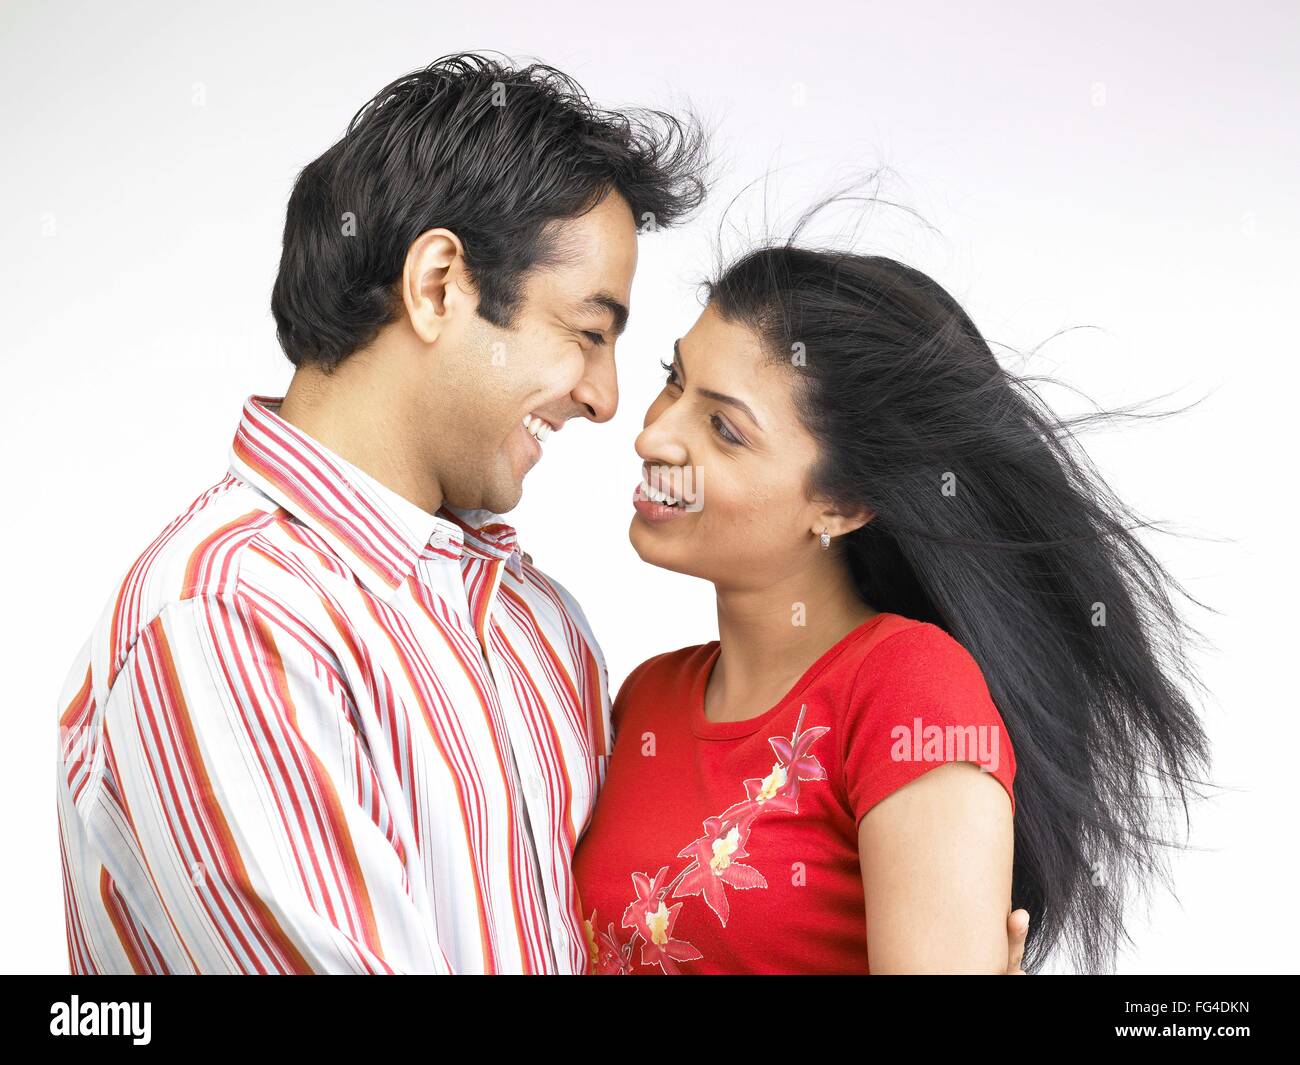 Hombre mujer, esposo esposa, pareja amorosa, India, Asia, MR#702Aand702L Fotografía de stock foto